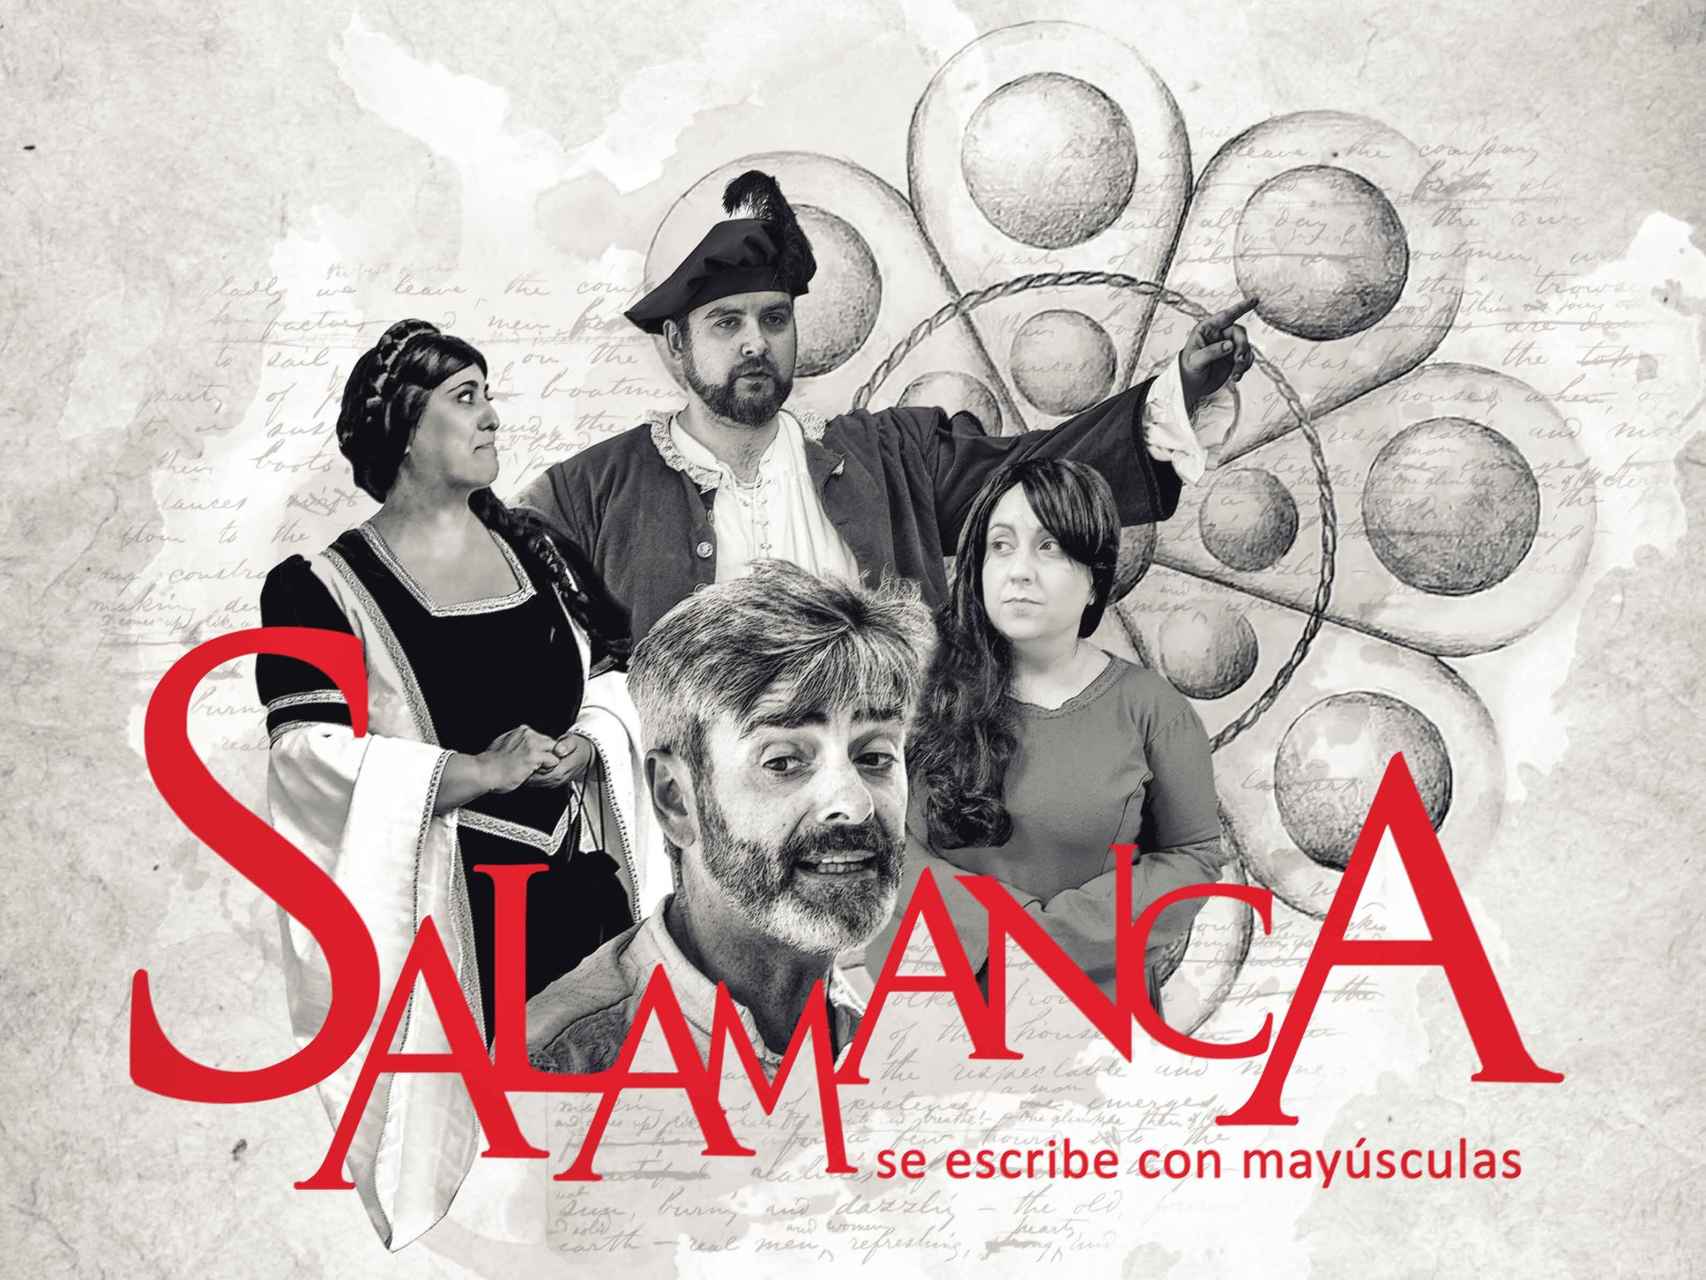 ‘Salamanca se escribe con mayúsculas’